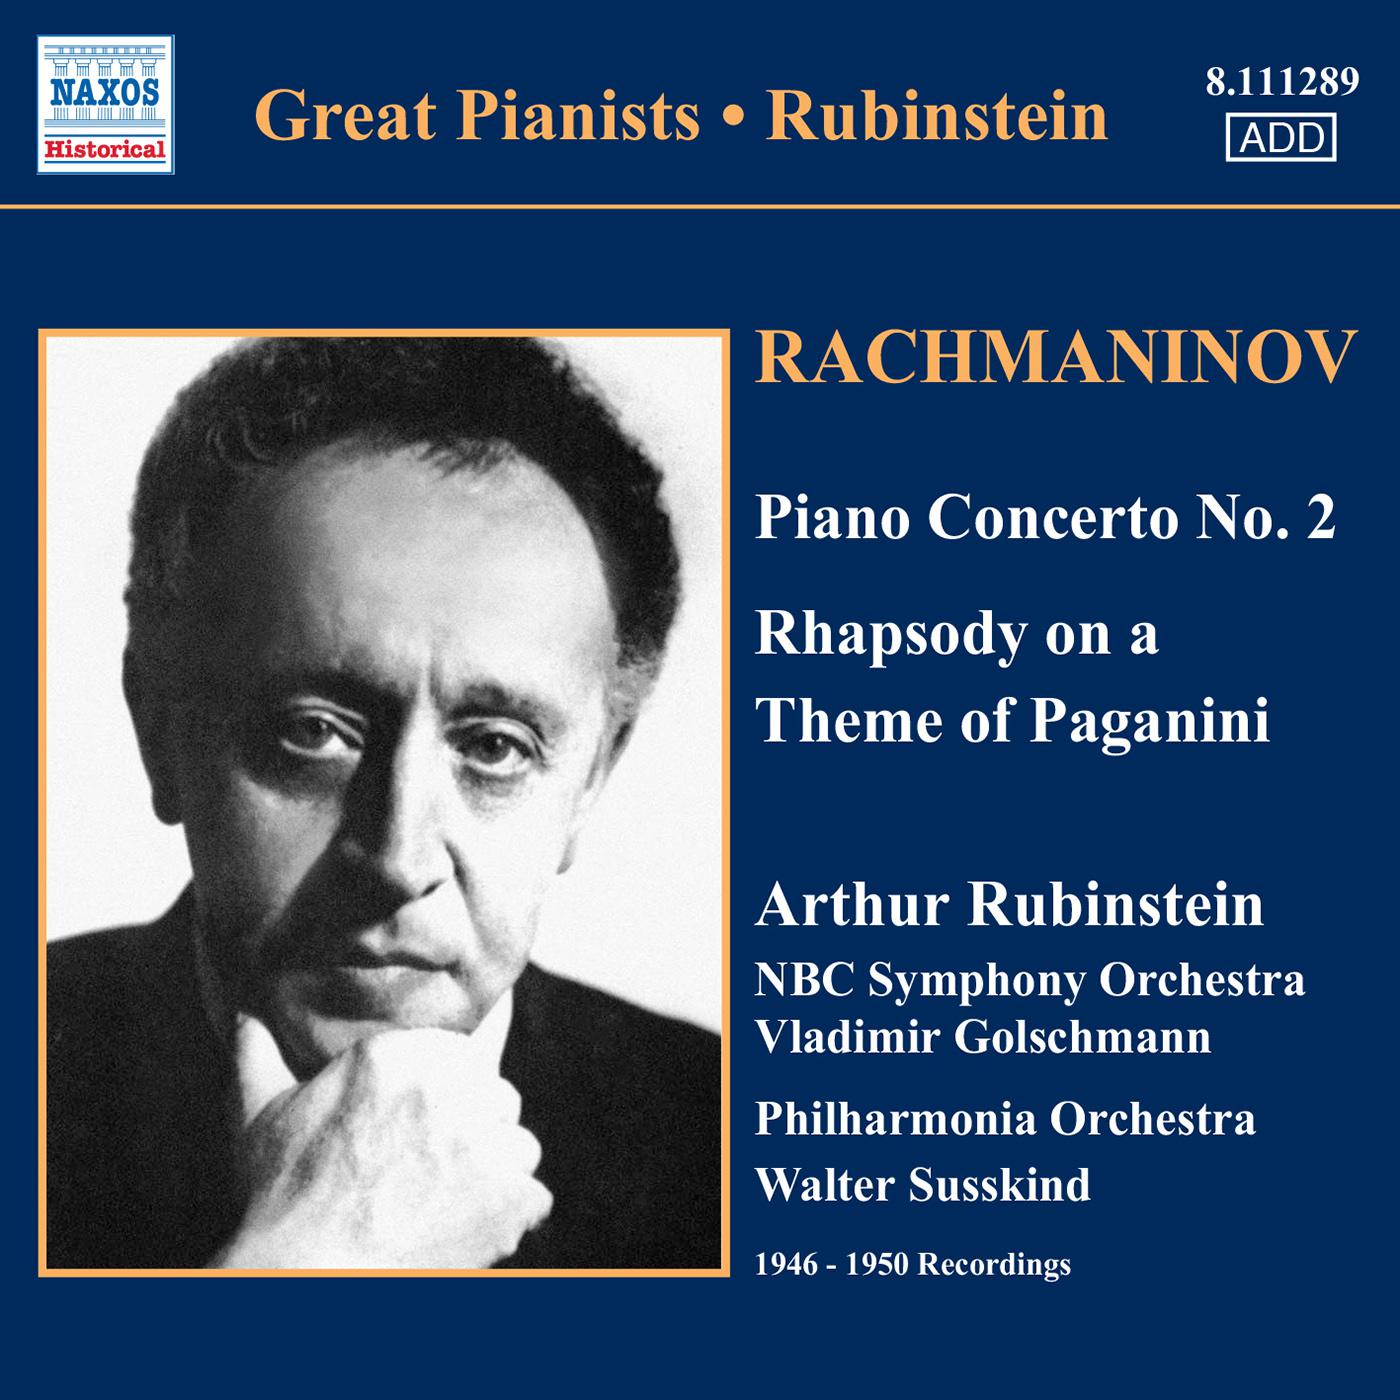 Rhapsody on a Theme of Paganini, Op. 43: Variation 24: A tempo un poco meno mosso